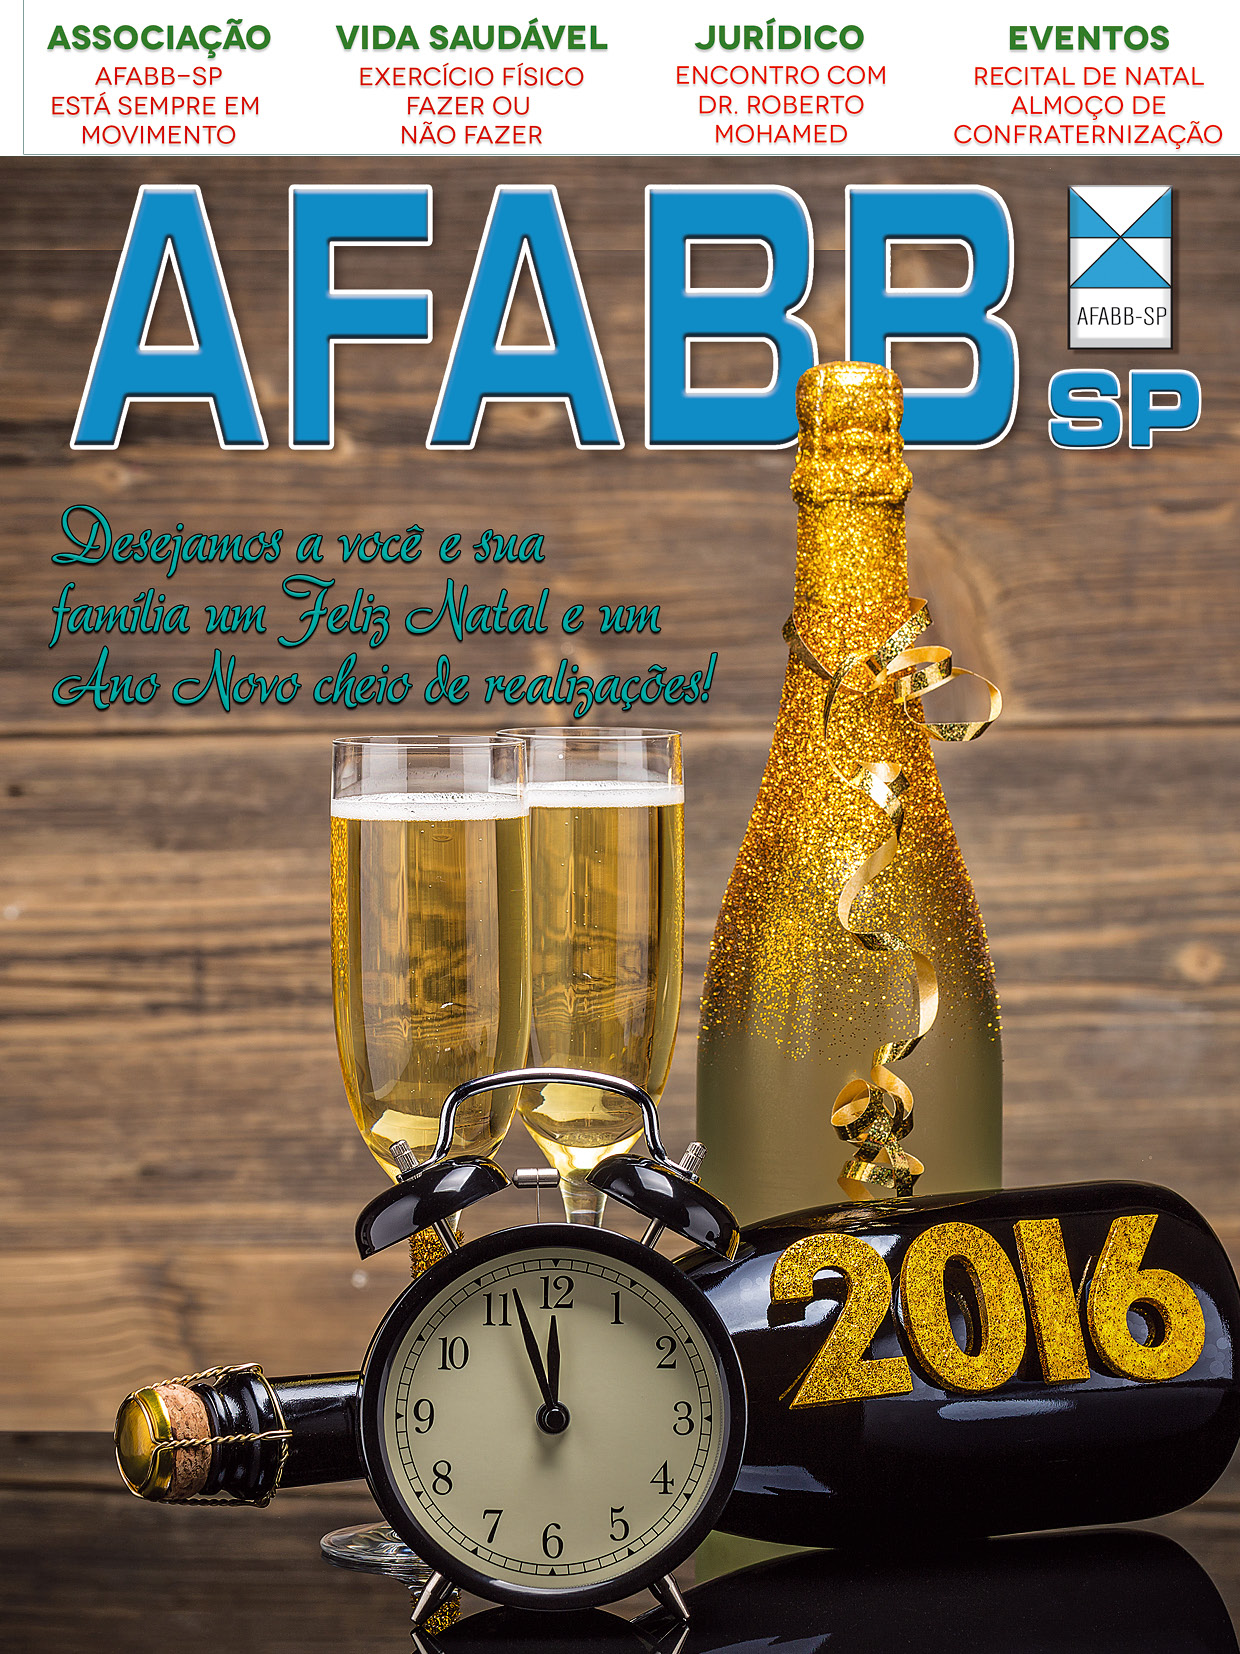 Revista AFABB-SP / Edição 139